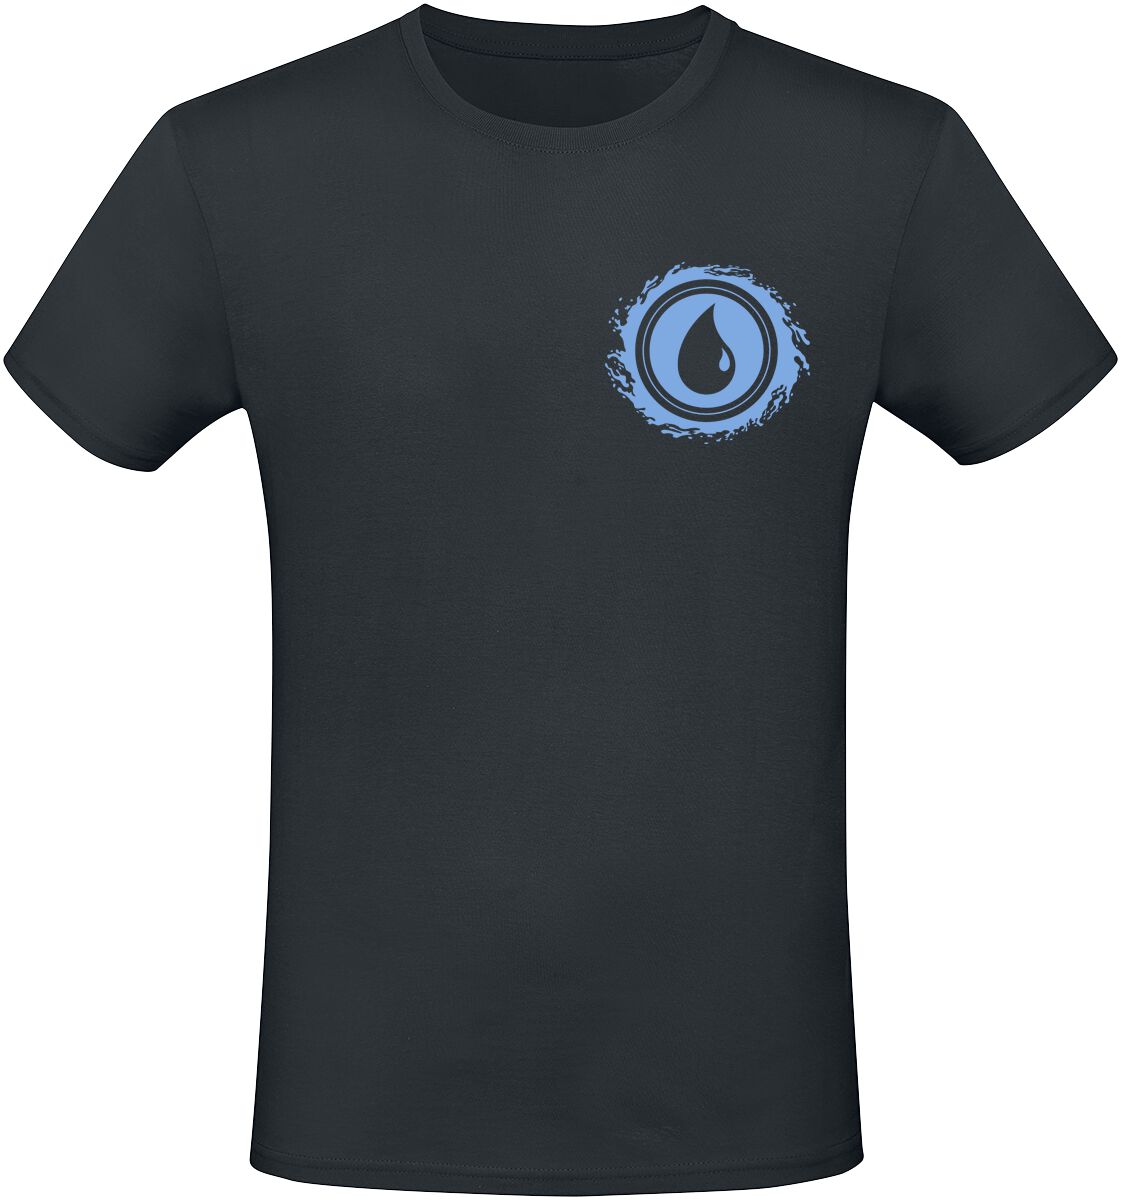 Magic: The Gathering - Gaming T-Shirt - Blue Mana - S bis XXL - für Männer - Größe M - schwarz  - EMP exklusives Merchandise!